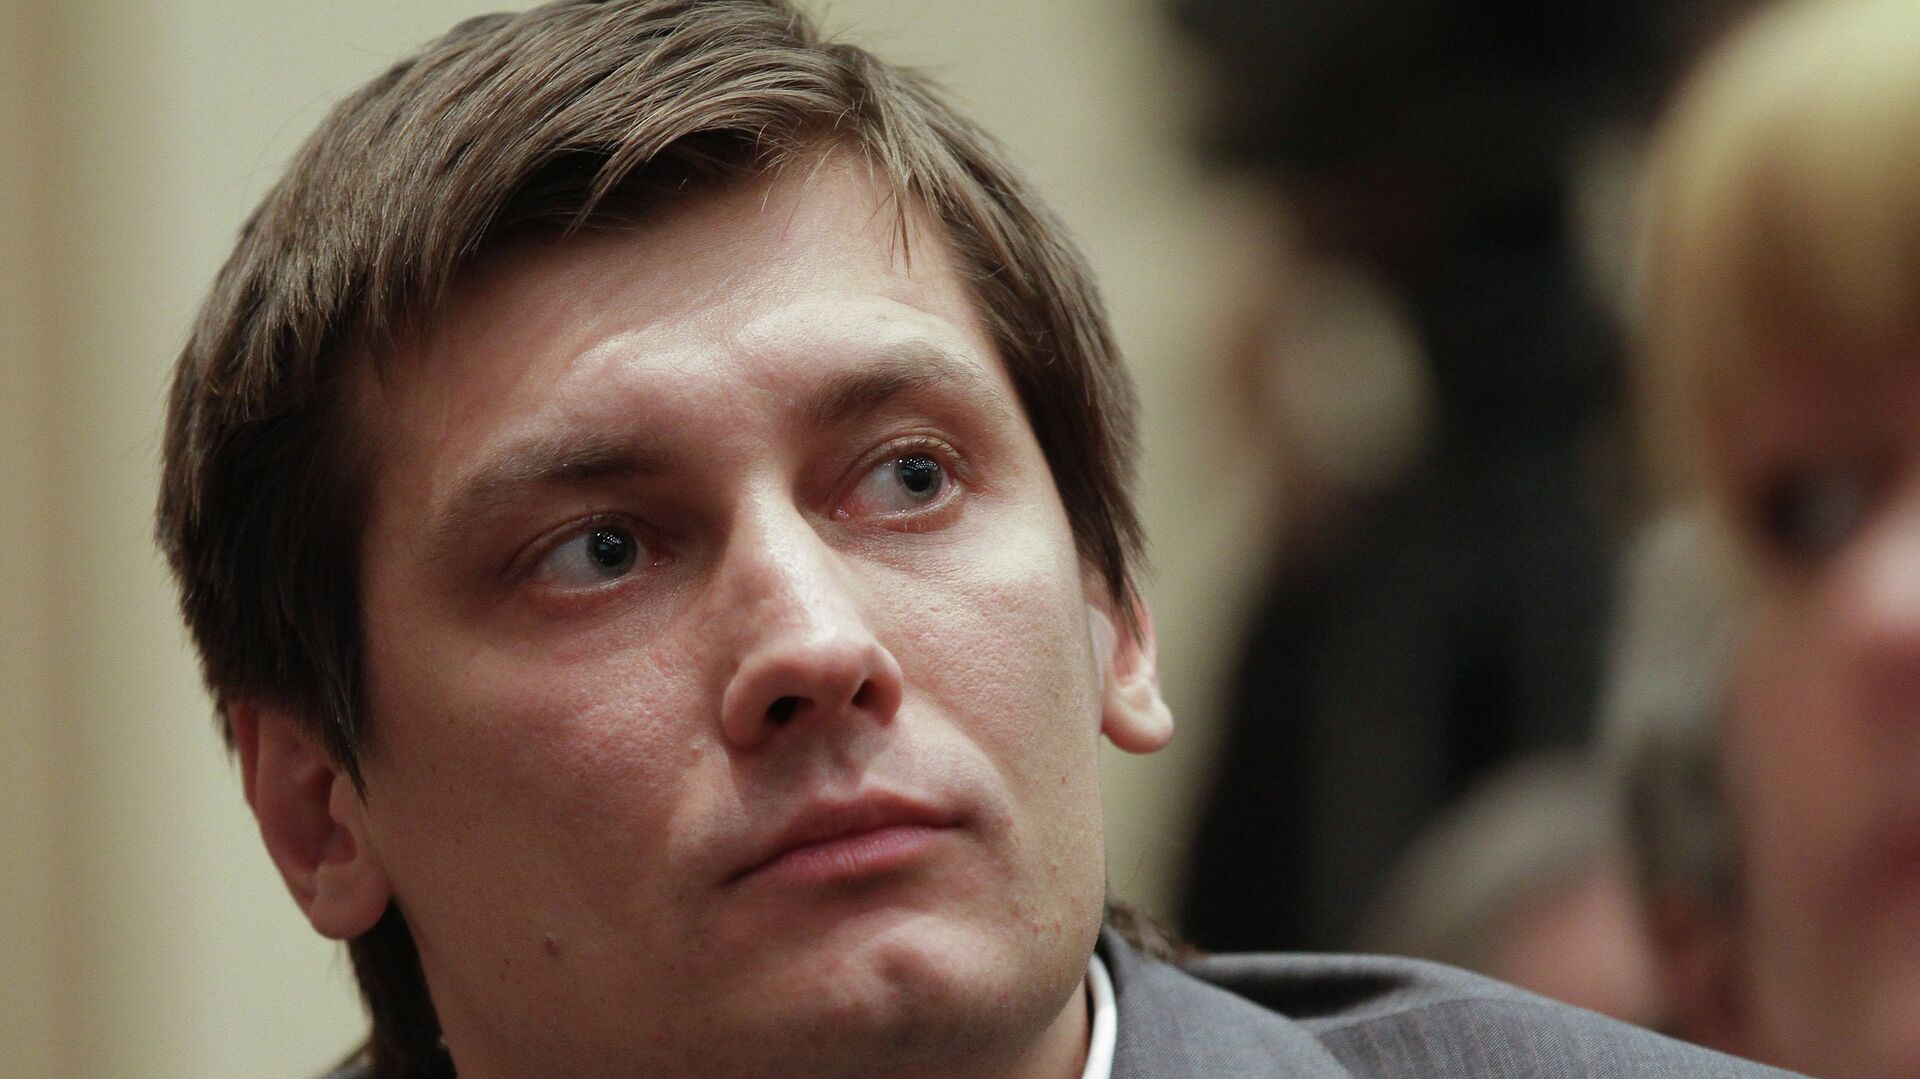 Адвокат прокомментировал слухи о том, что Гудков покинул Россию 